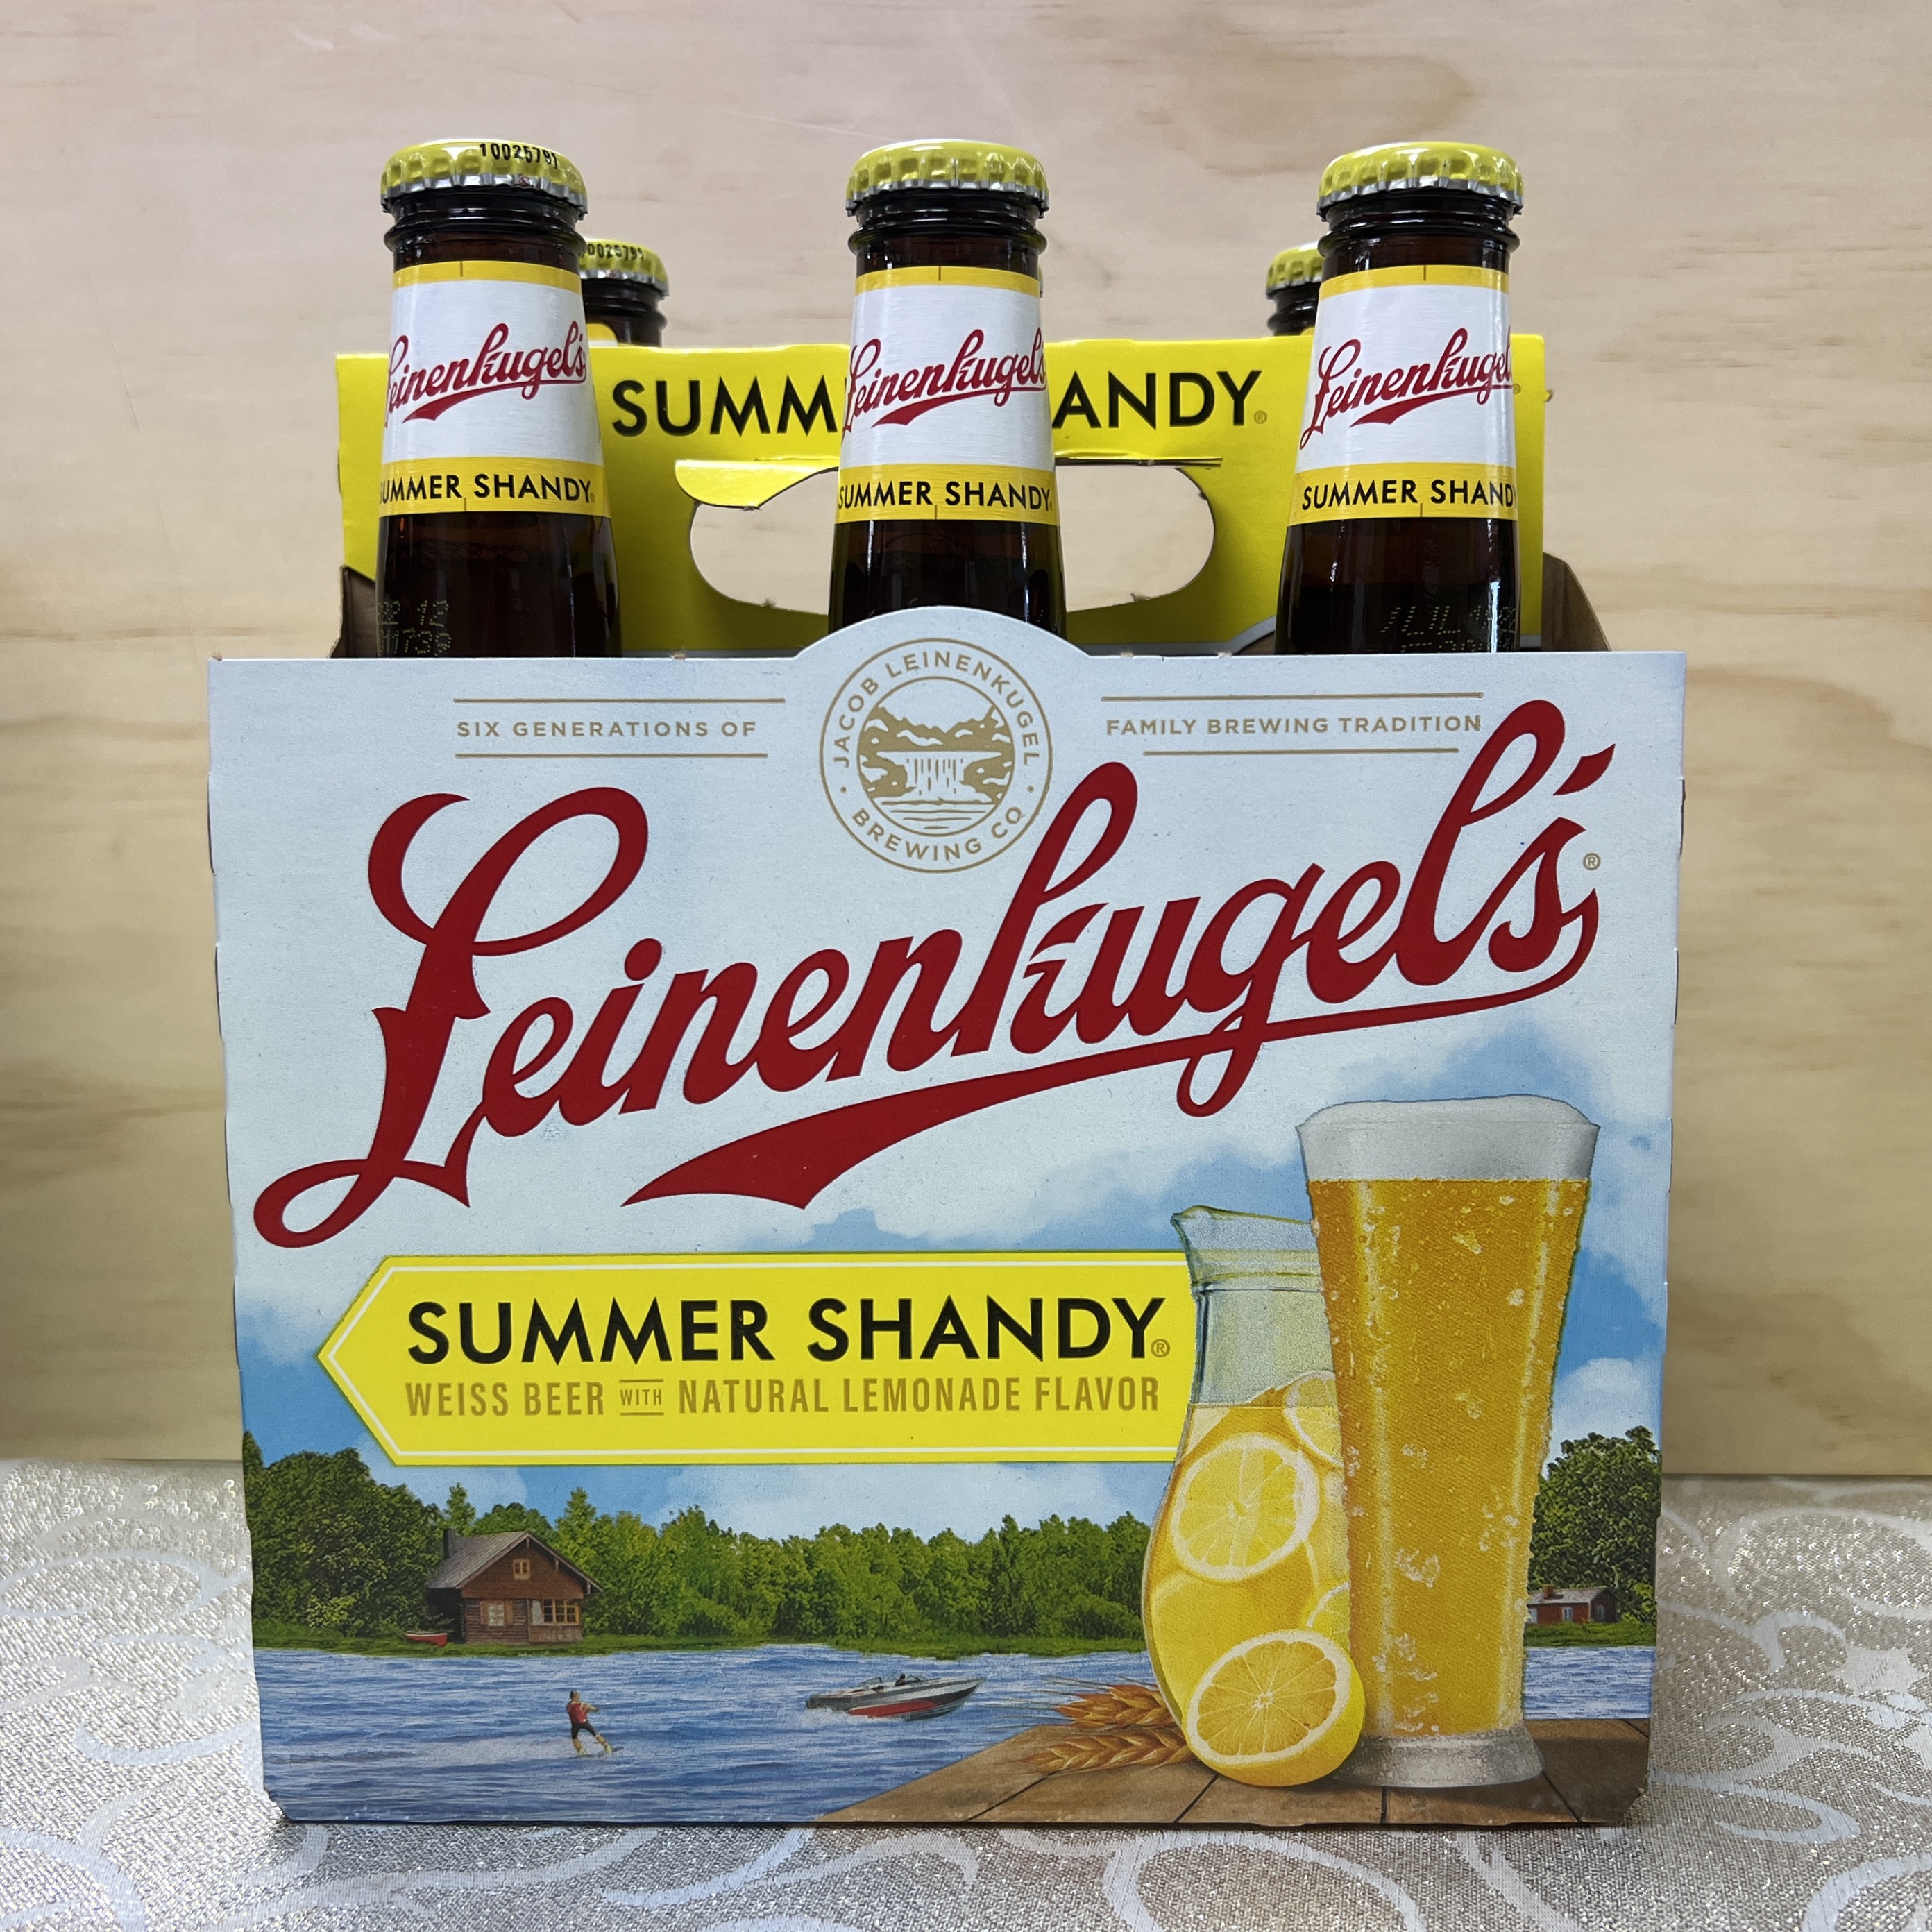 Leinenkugels Summer Shandy Weiss Lemon flavored 6 x 12oz